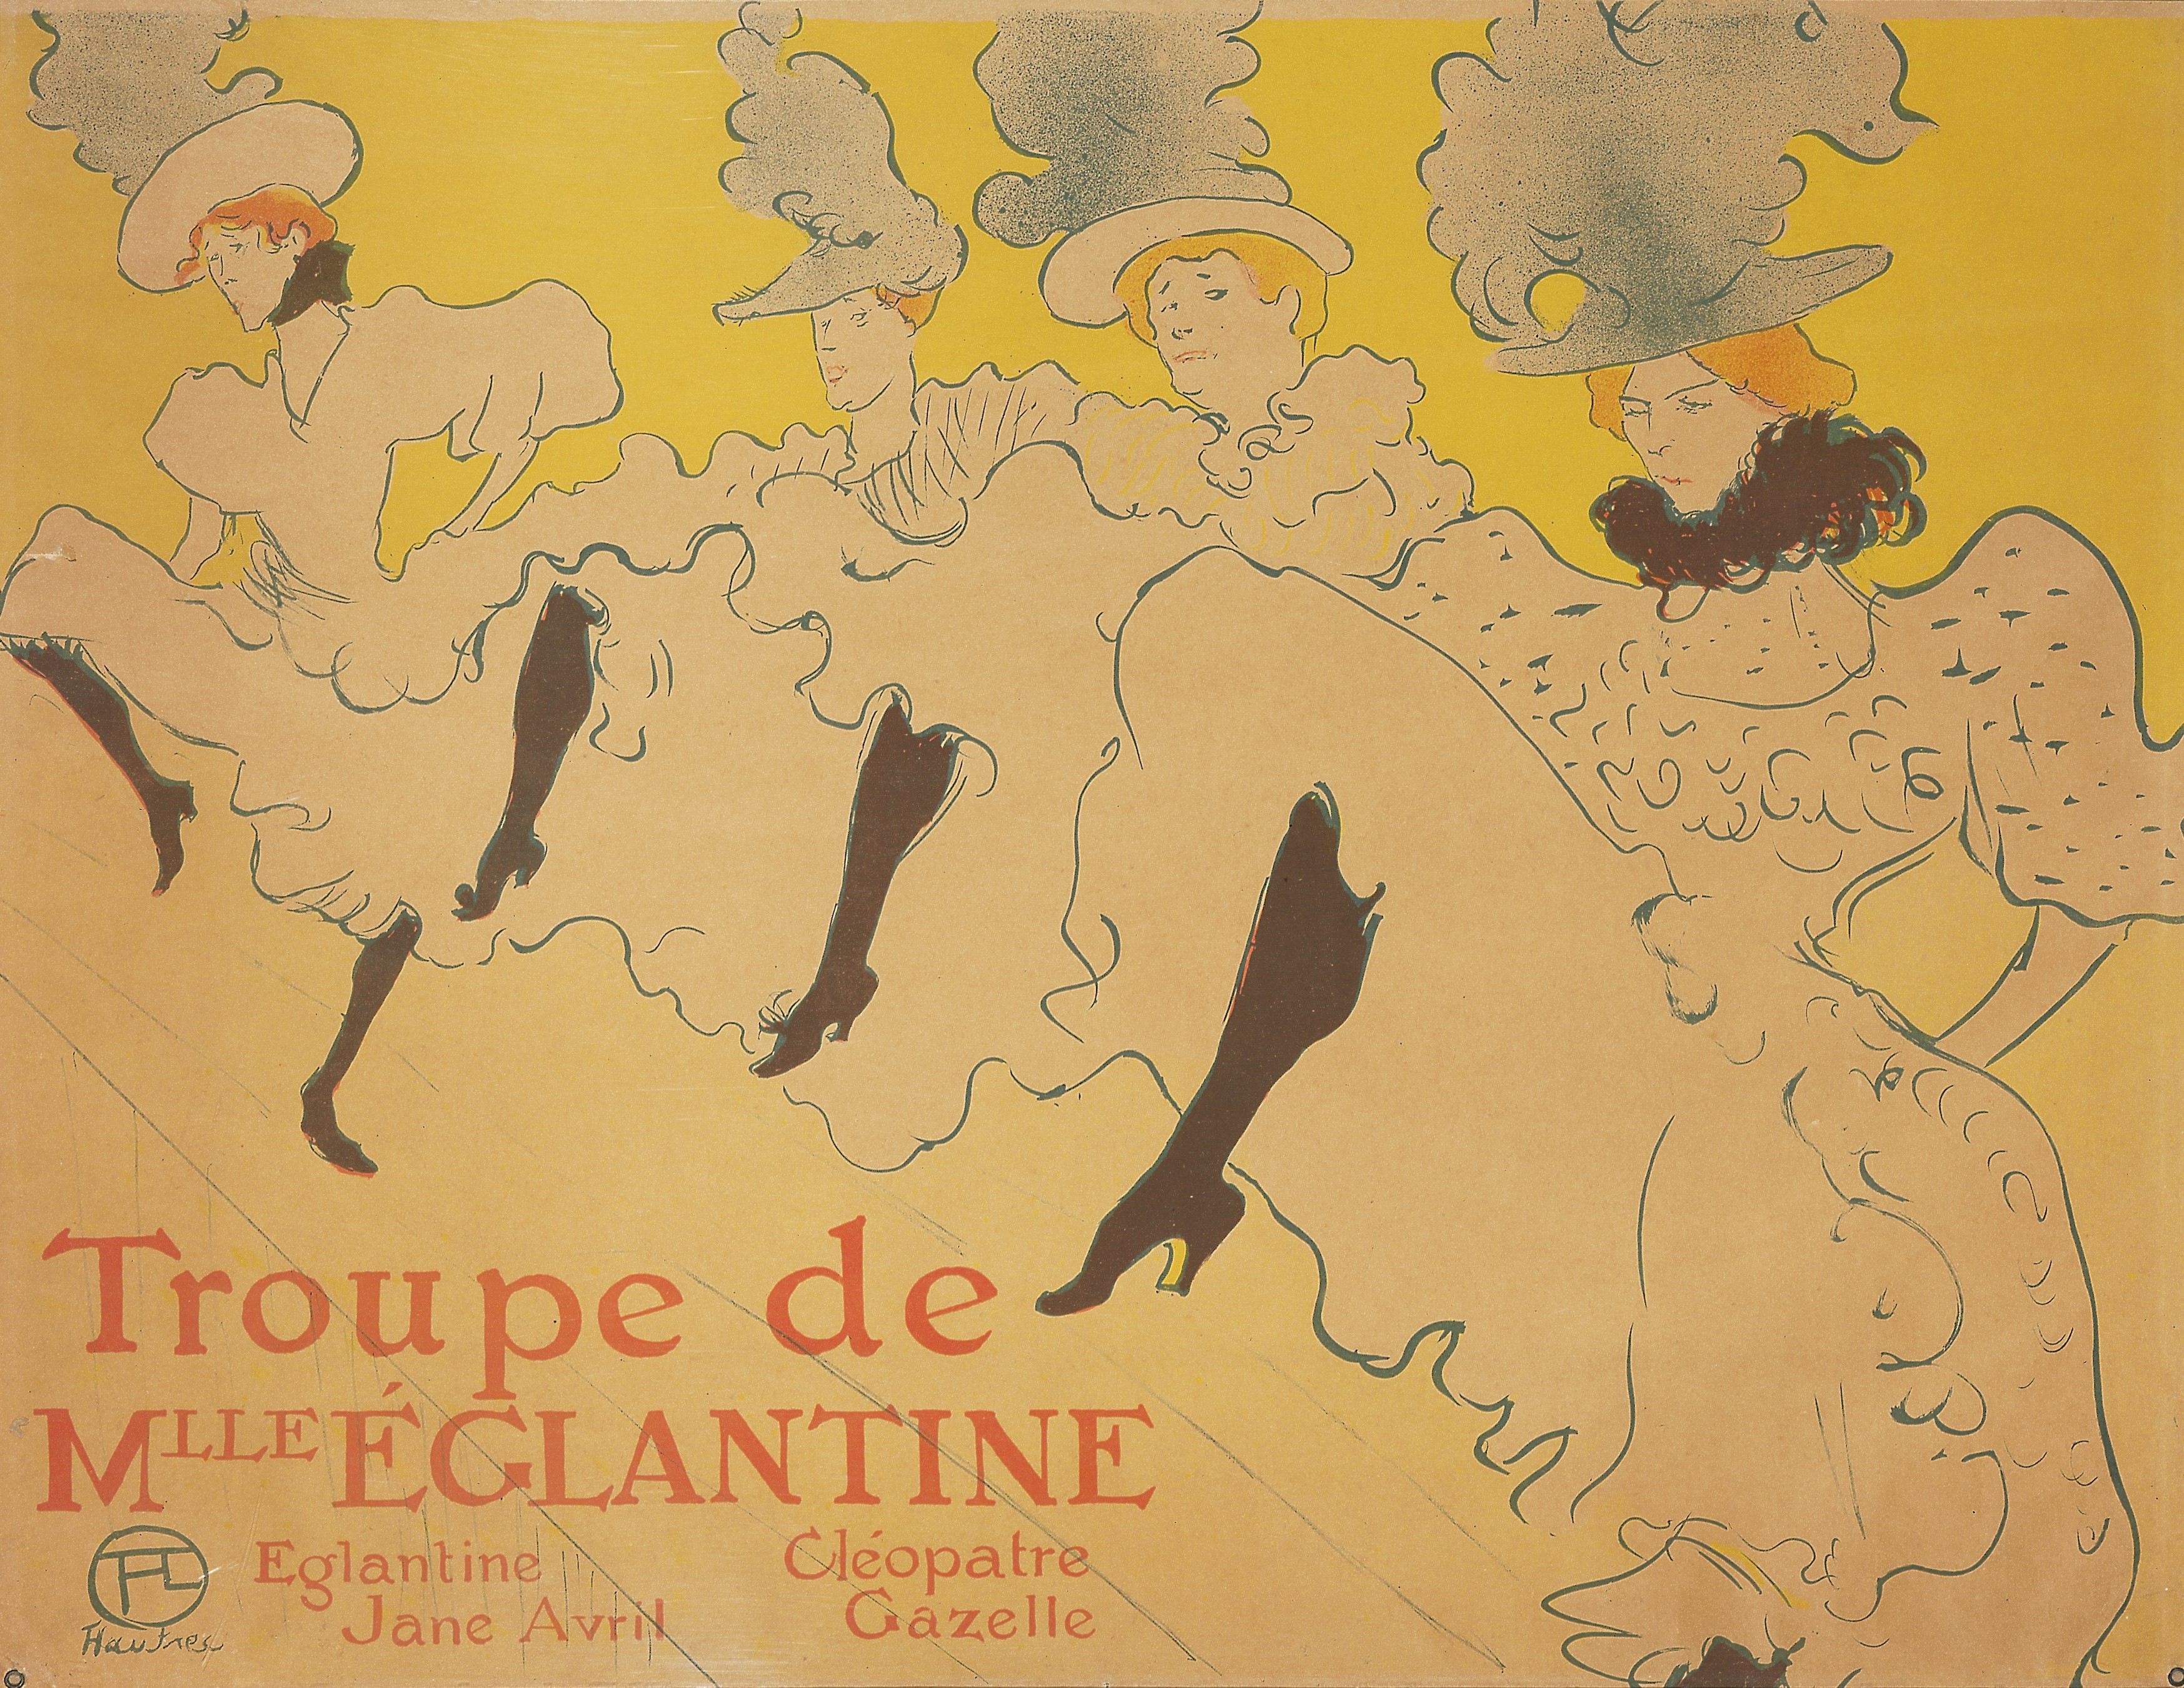 Toulouse-Lautrec's La Troupe de Mademoiselle Eglantine